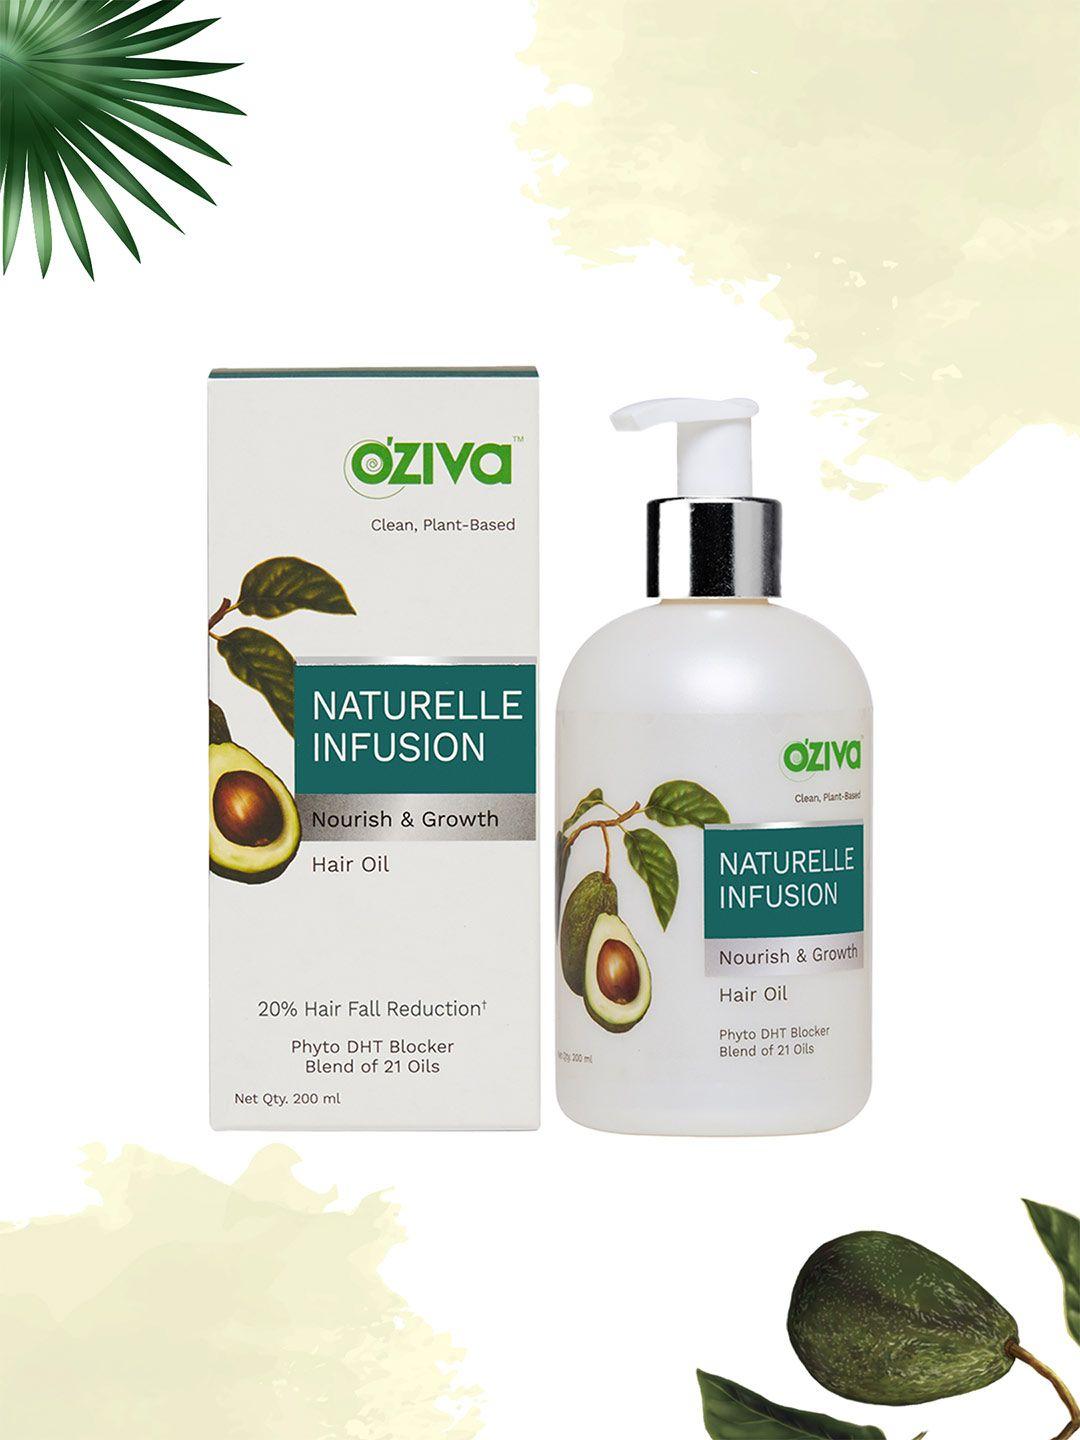 oziva naturelle infusion nourish & growth hair oil 200ml